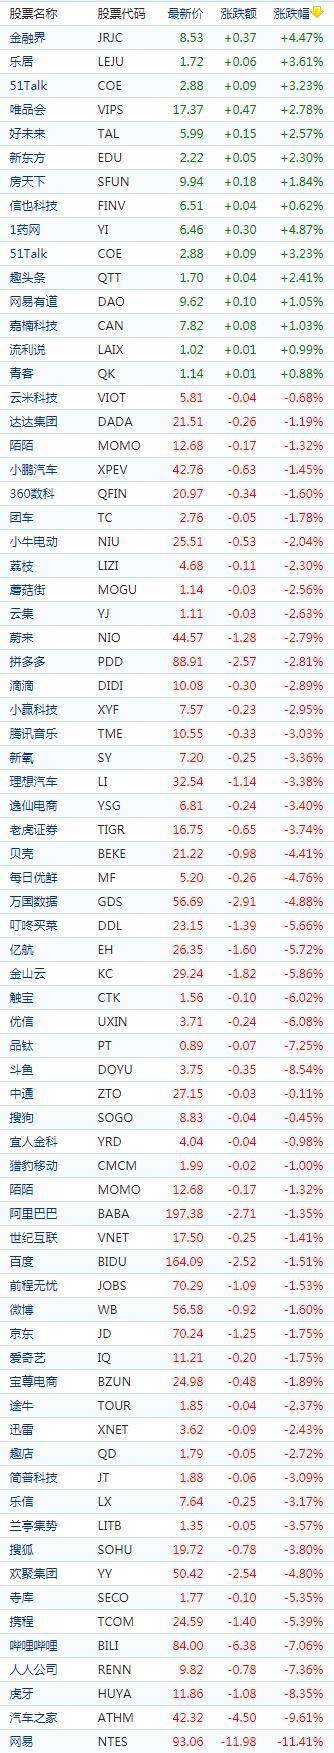 中国概念股周二收盘多数下跌 阿里巴巴(美股BABA)下跌1.35%